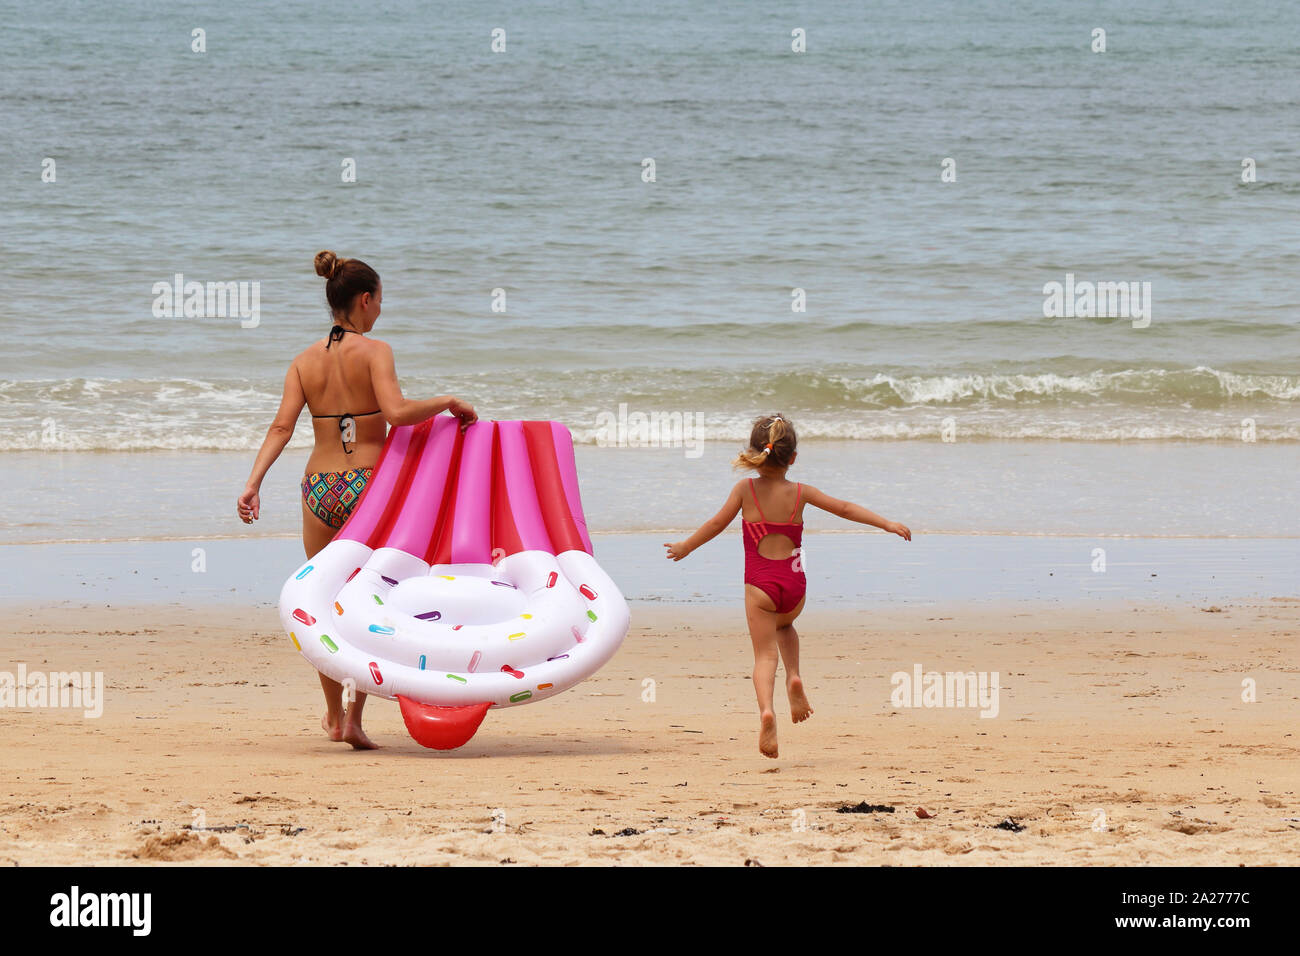 Madre e hija ir a nadar en el mar con colchón inflable. Chico alegre niña salta sobre la arena de la playa, vacaciones en la playa, infancia feliz Foto de stock